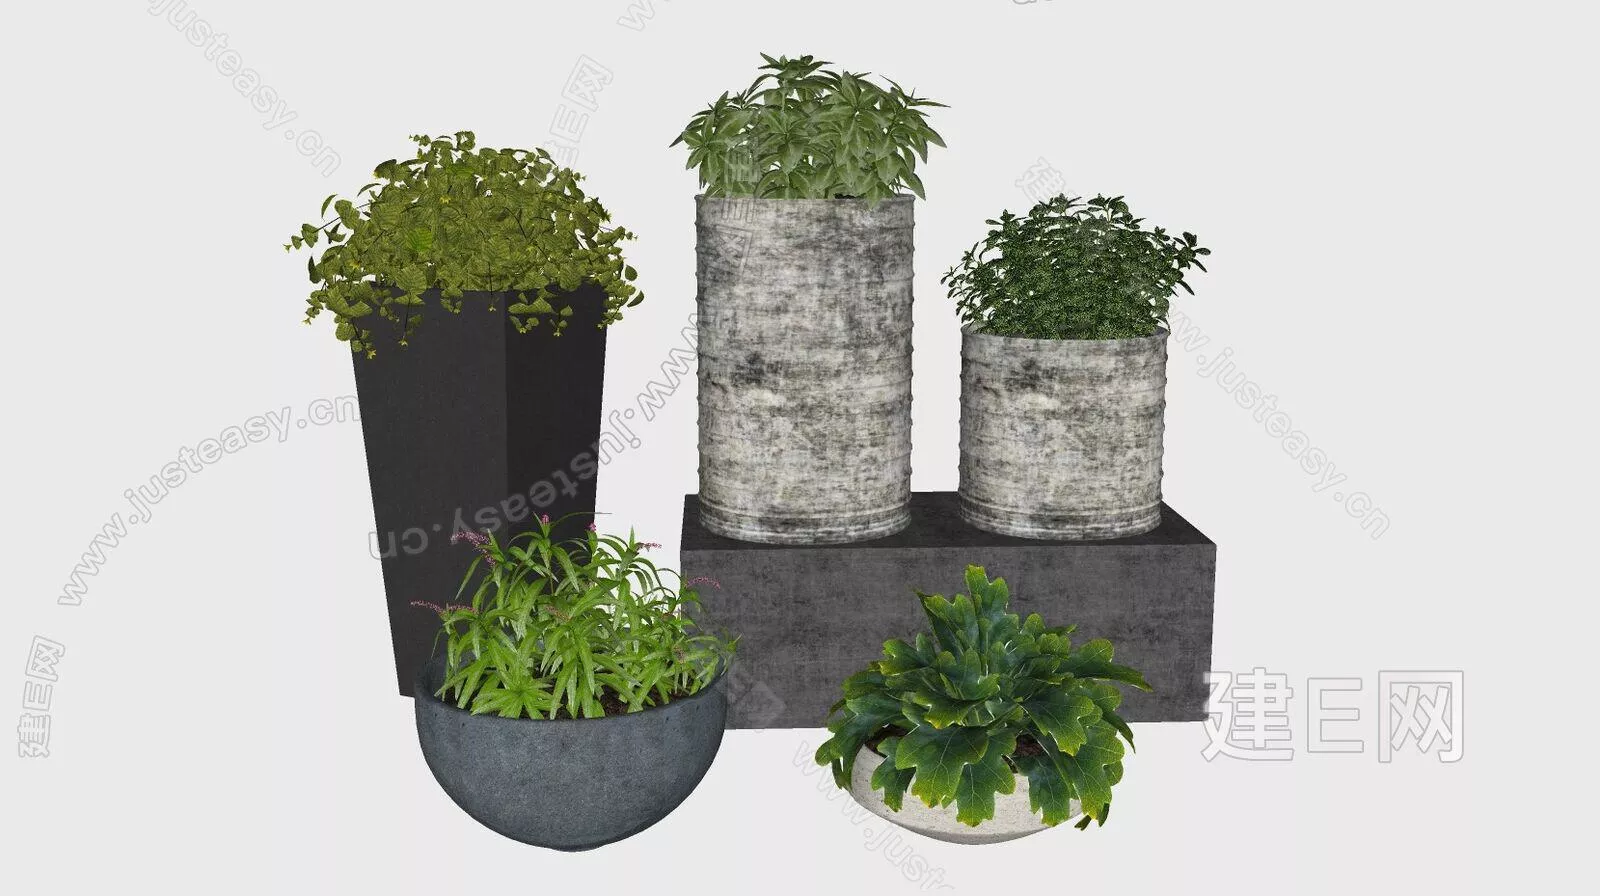 MODERN POTTED PLANT - SKETCHUP 3D MODEL - ENSCAPE - 113197328